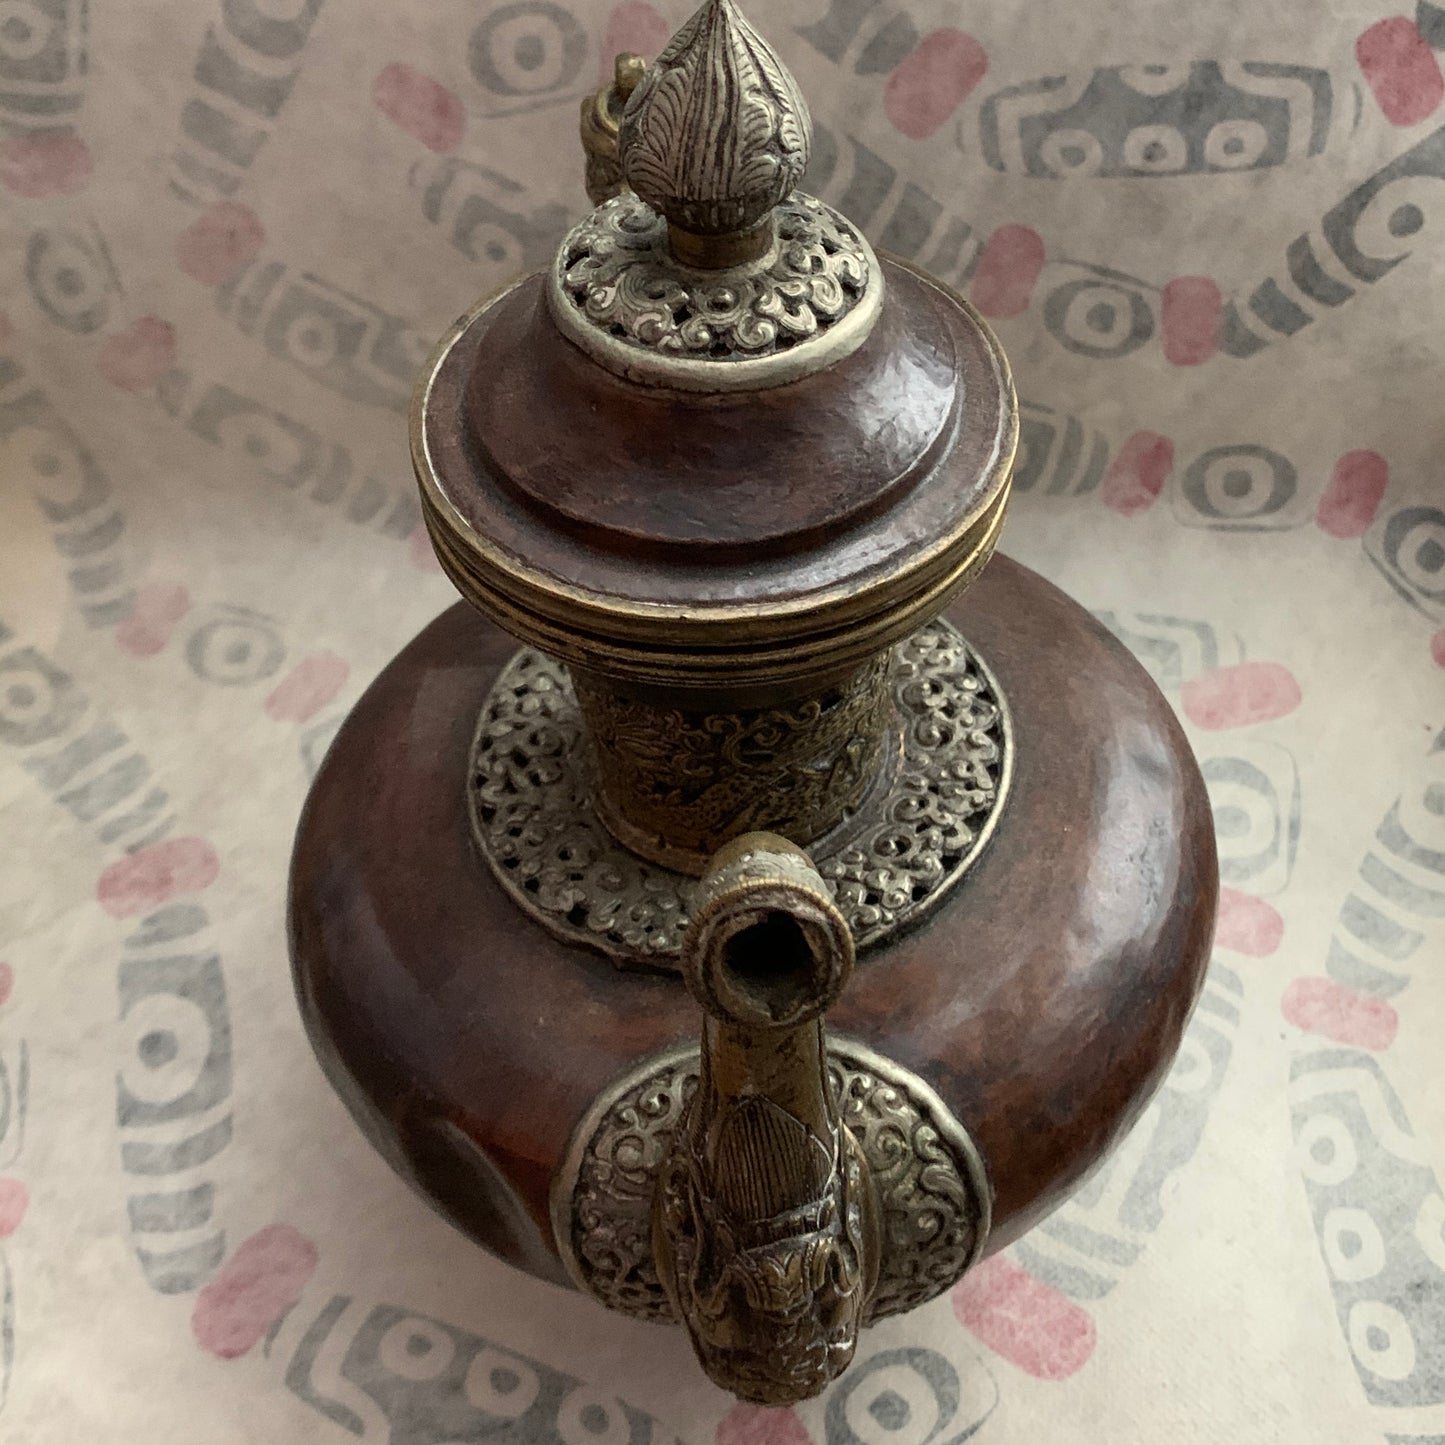 An antique Tibetan bronze teapot